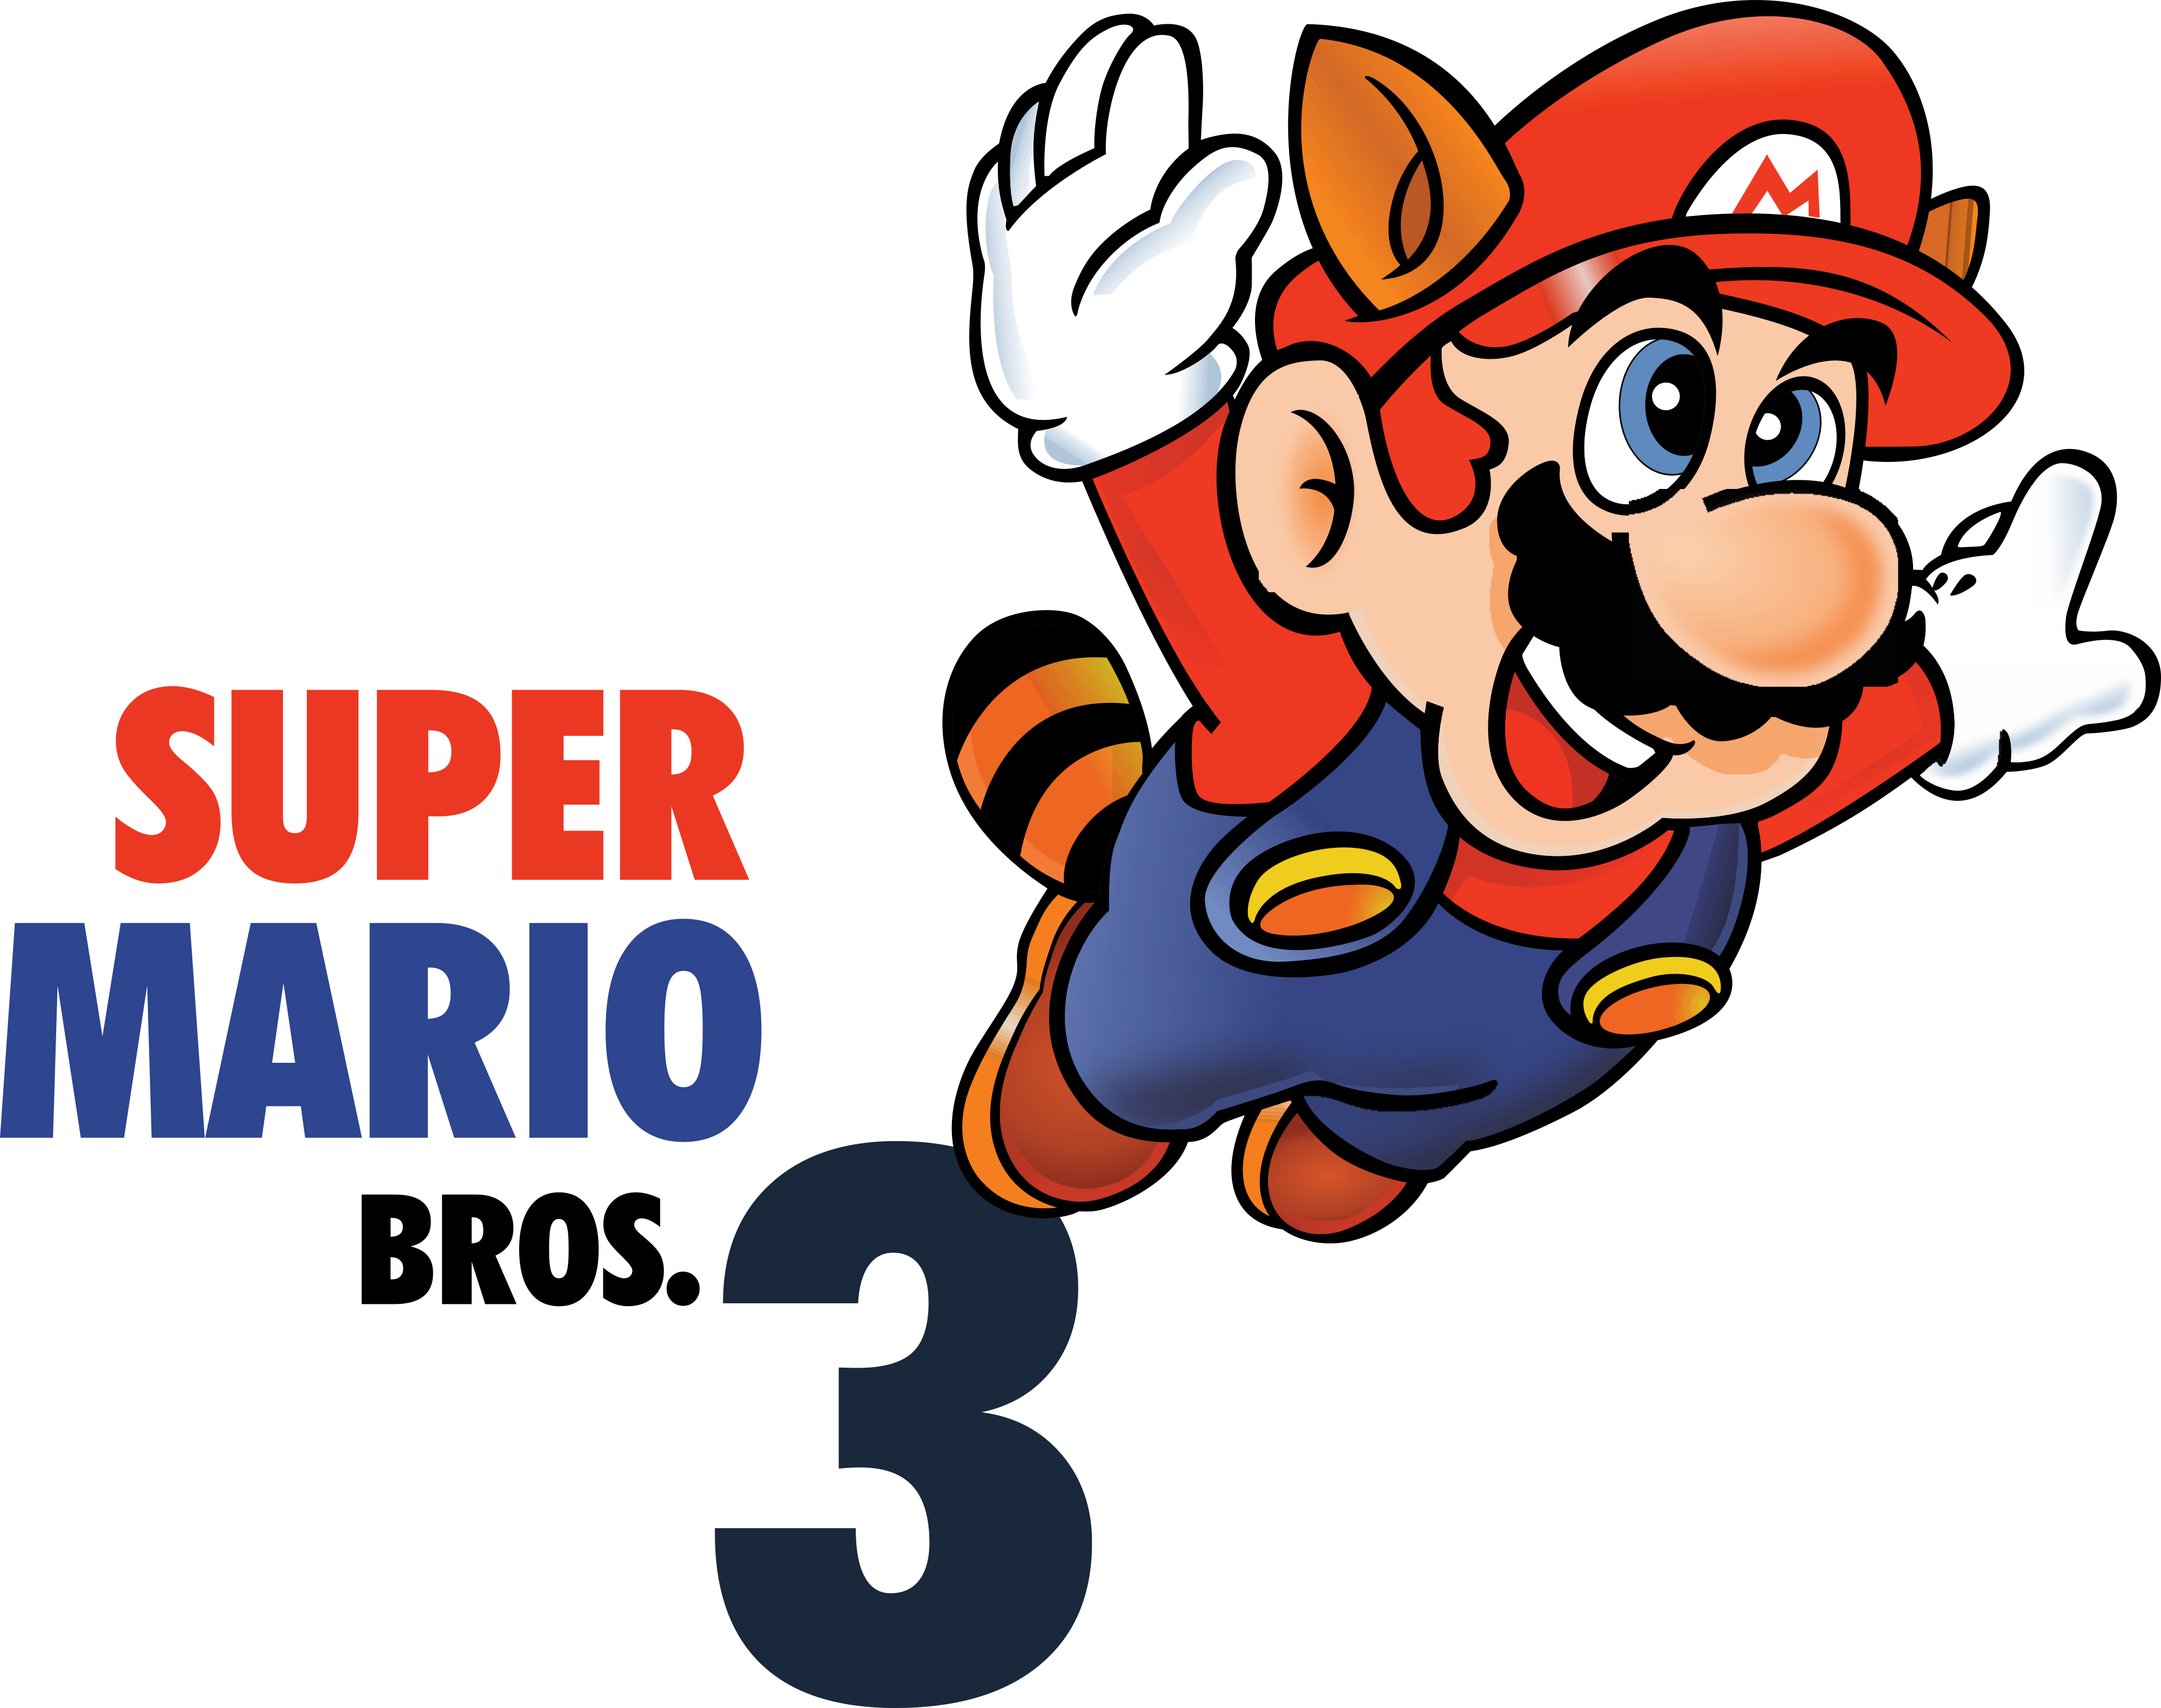 Super mario bros. Super Mario Bros 3. Super Mario логотип. Супер Марио БРОС 3 Марио. Super Mario надпись.